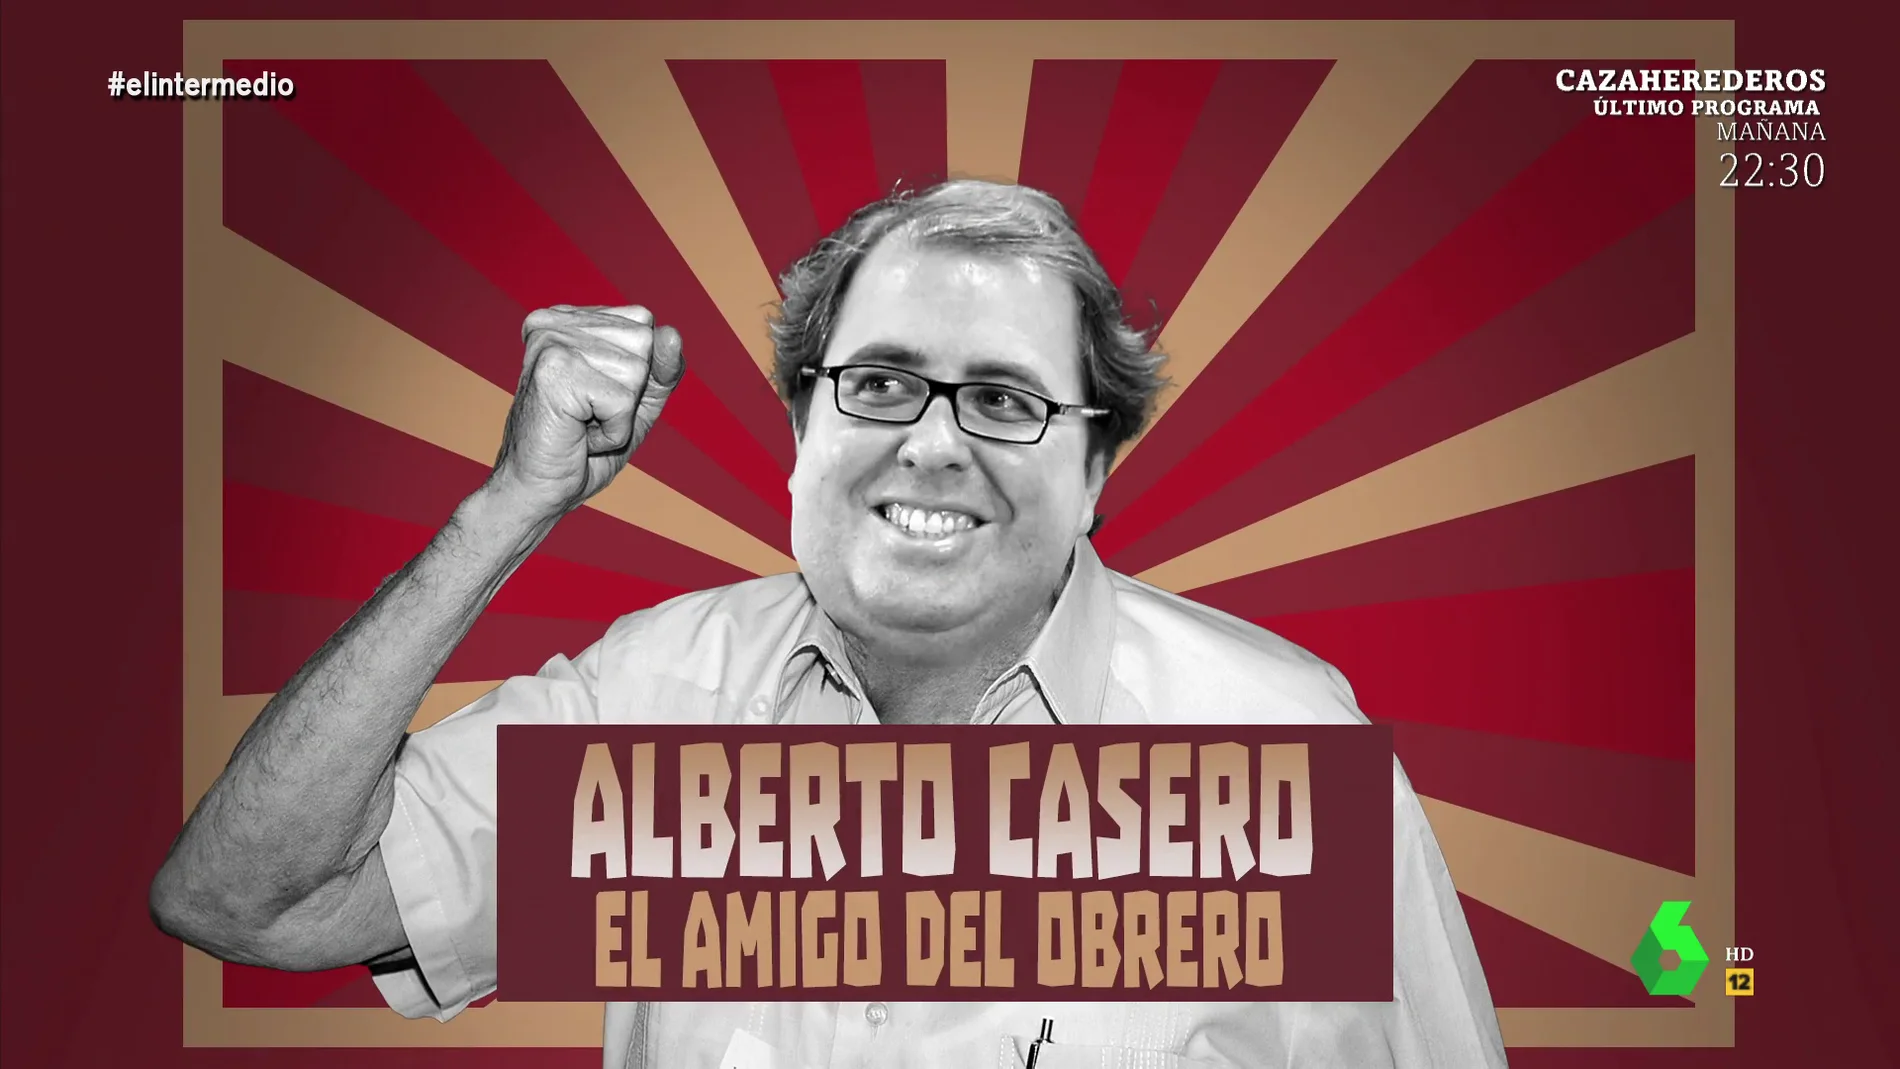 'Alberto Casero, el amigo del obrero': Dani Mateo repasa los 'homenajes' que le debería hacer la izquierda al político del PP